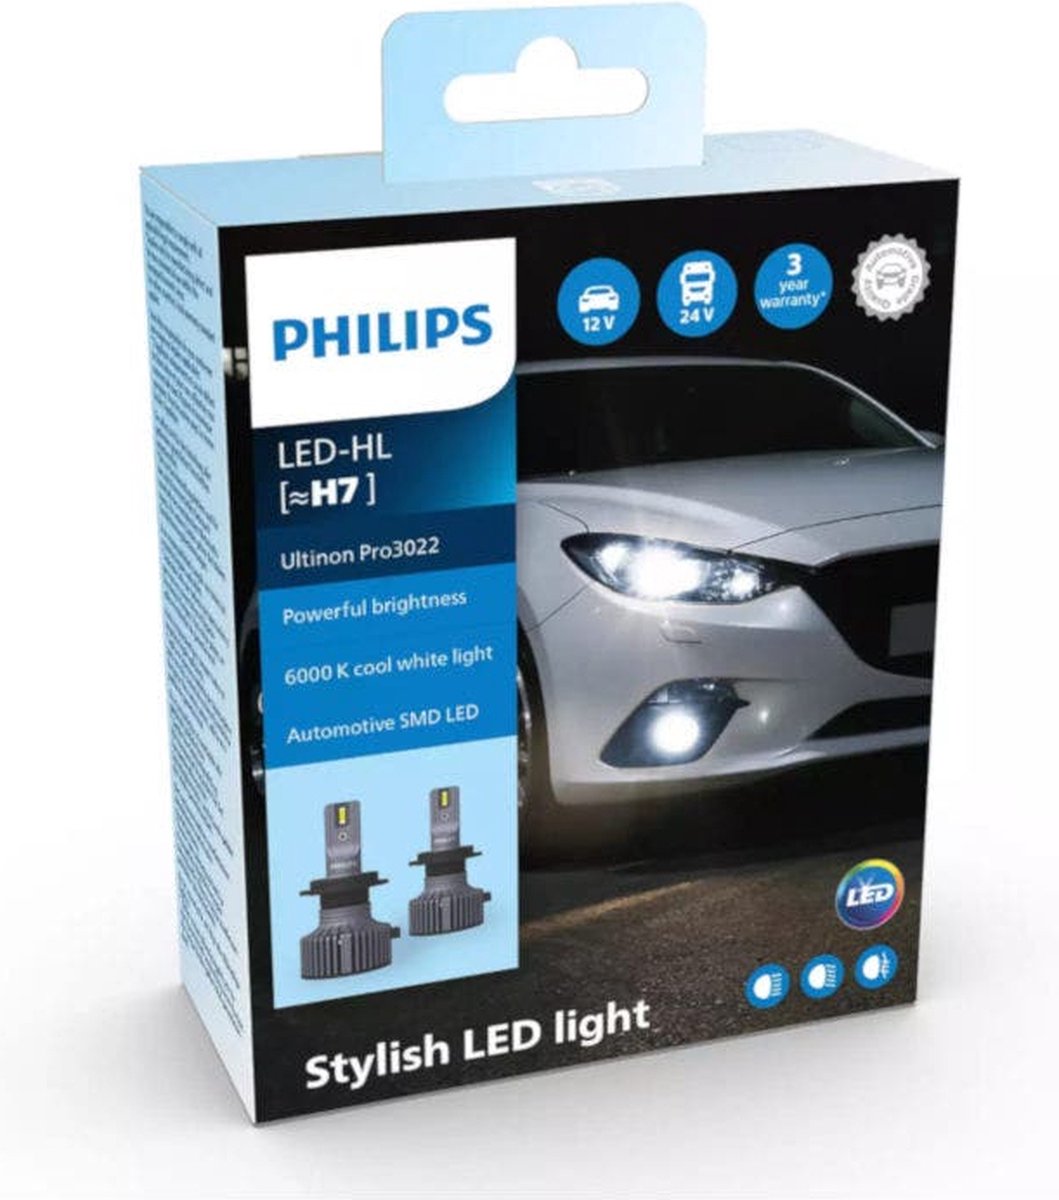 Philips Ultinon Pro3022 LED-HL H7 set LUM11972U3022X2